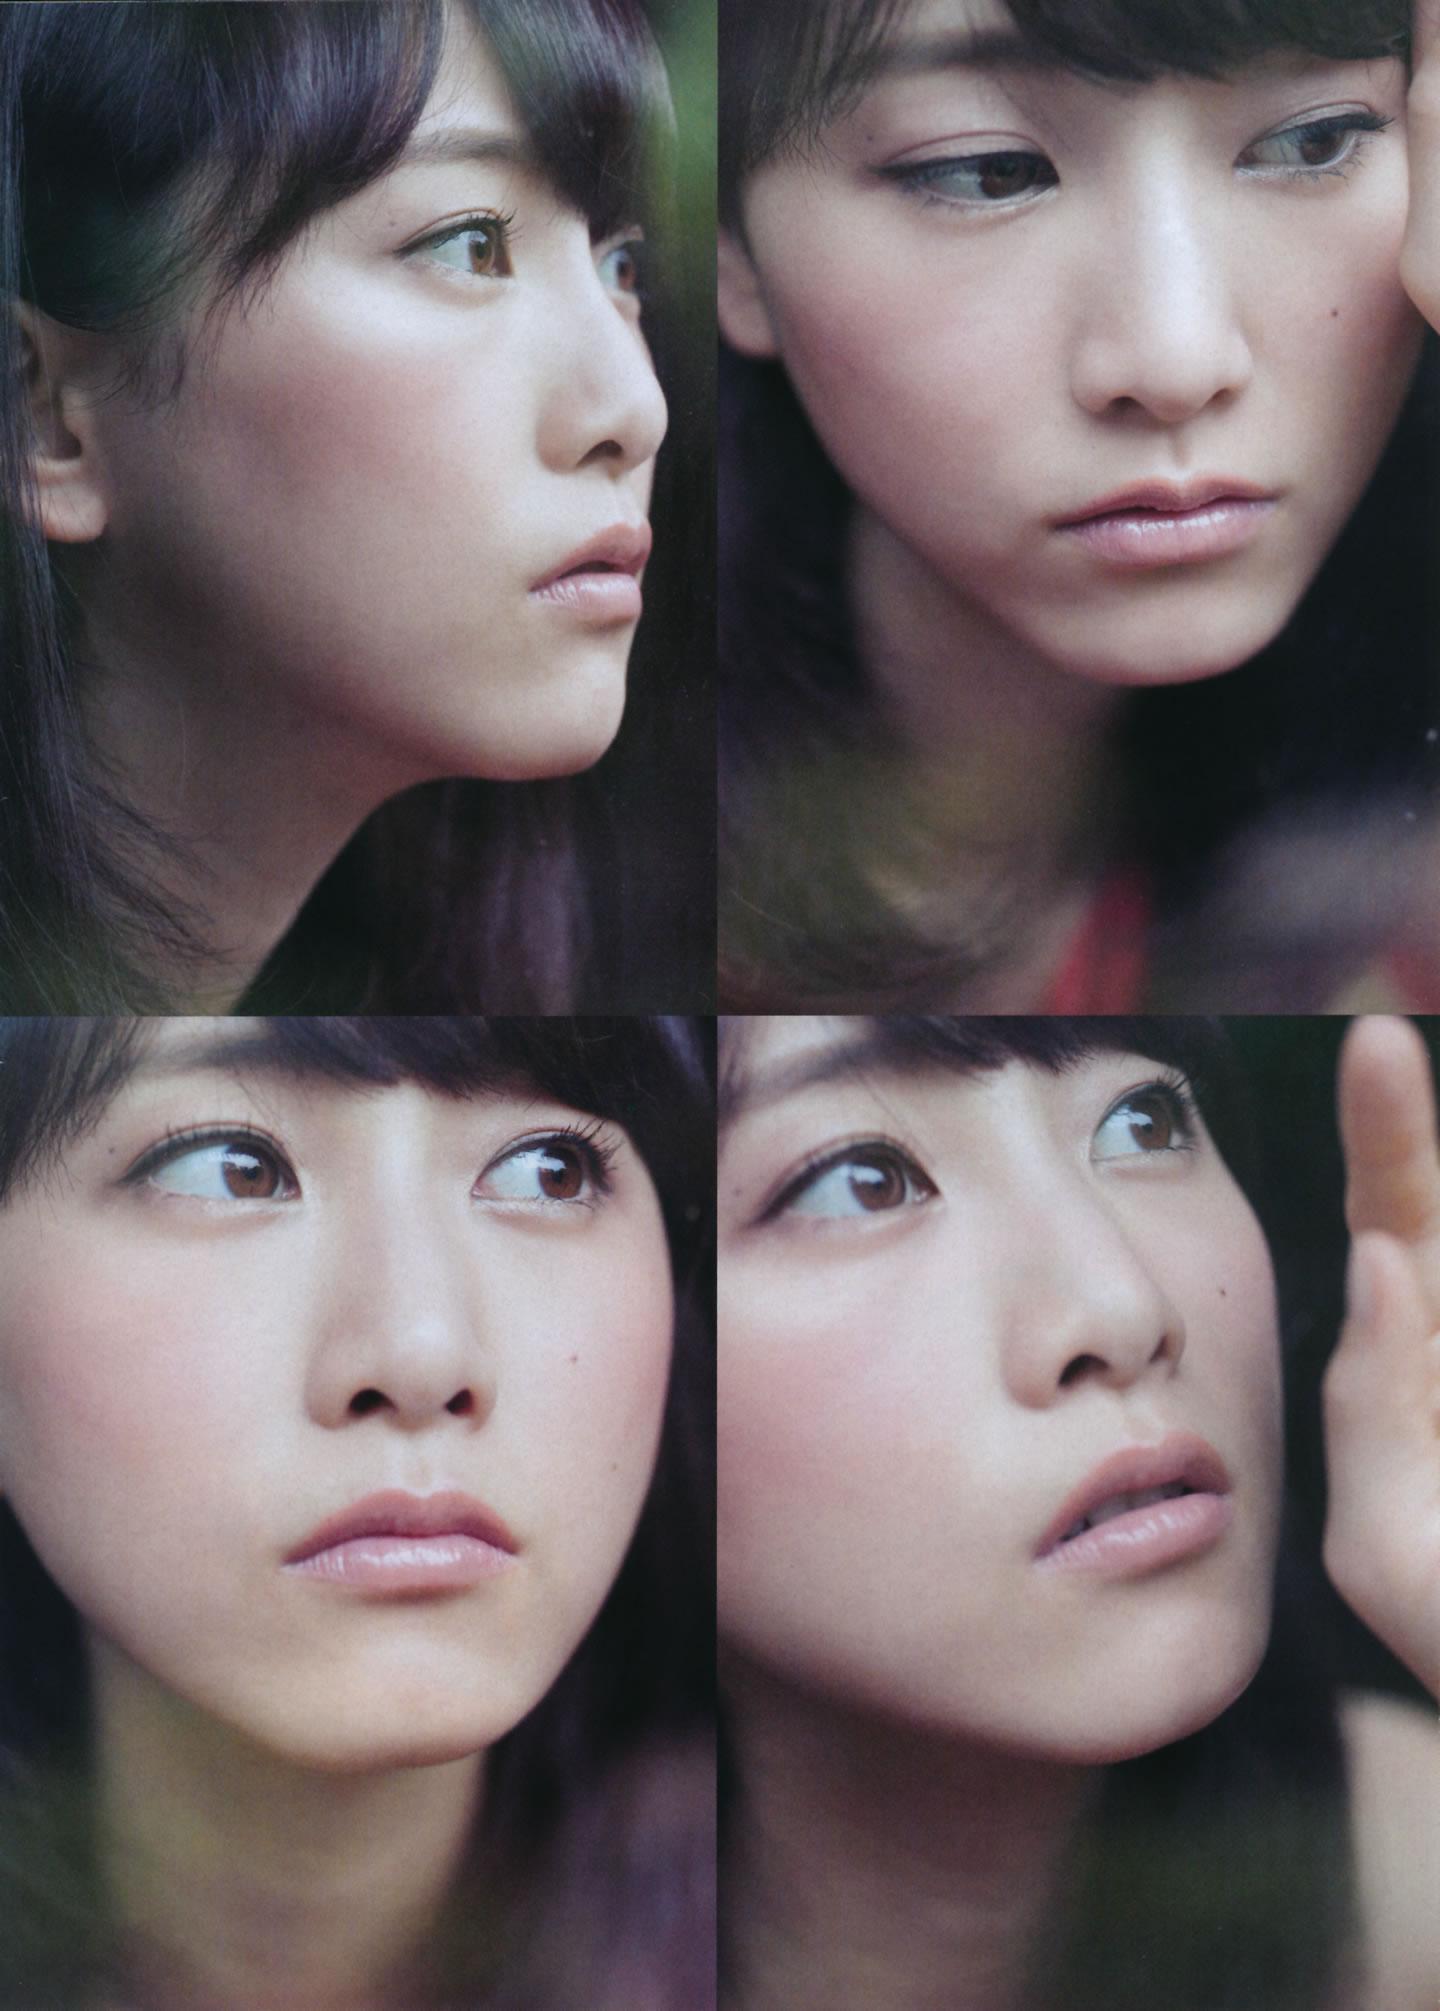 日本女子偶像组合AKB48成员特刊封面写真,日本女子偶像组合AKB48成员特刊封面写真